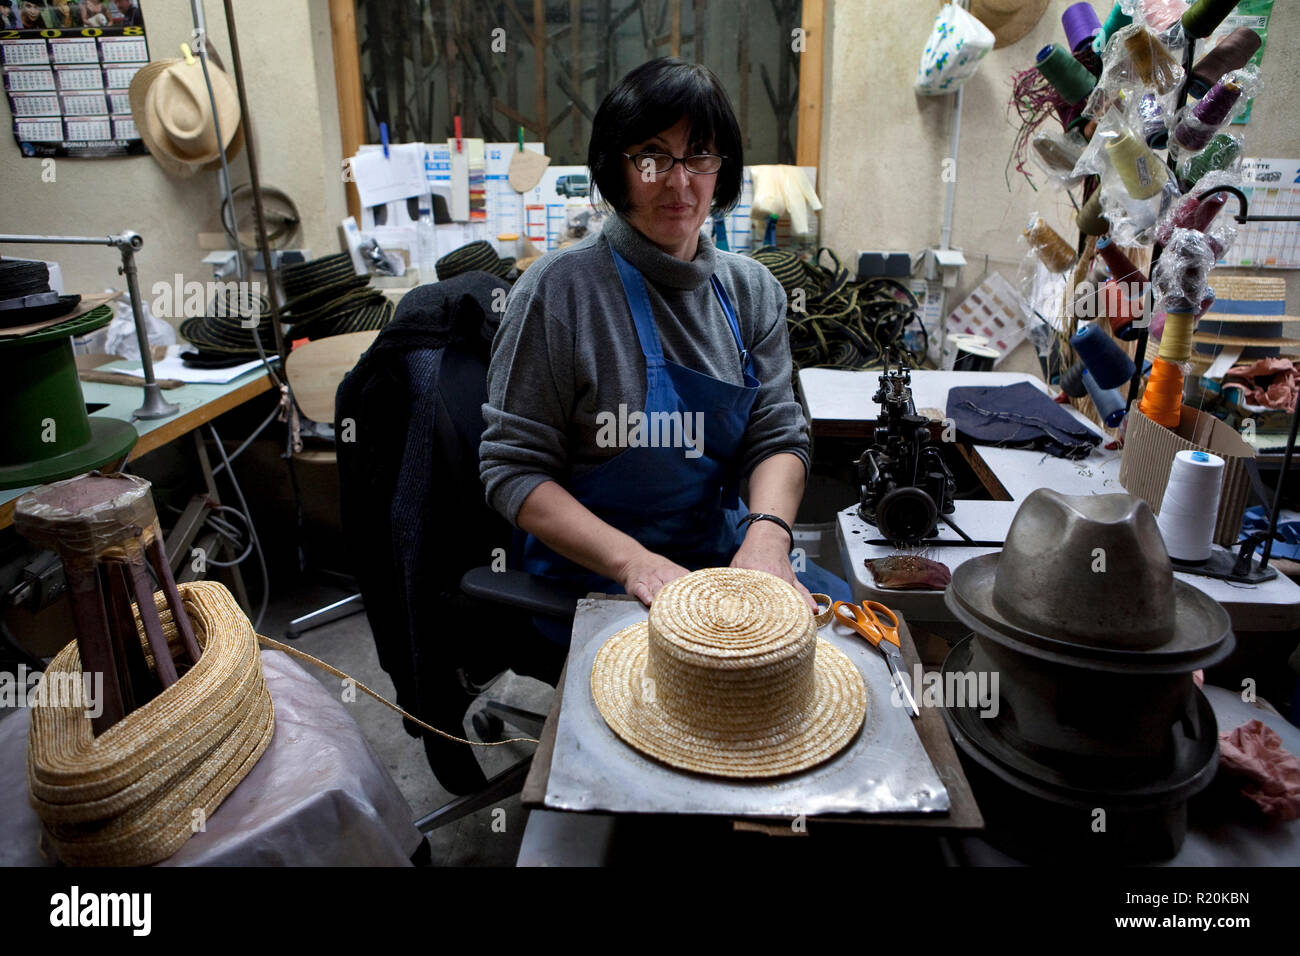 9 décembre 2009 - Coustilleres' hat factory, Septfonds, France - Doris  Duran travaille à l'usine de chapeau Coustilleres" depuis 20 ans. Elle est  de la paille à coudre ensemble à l'aide de